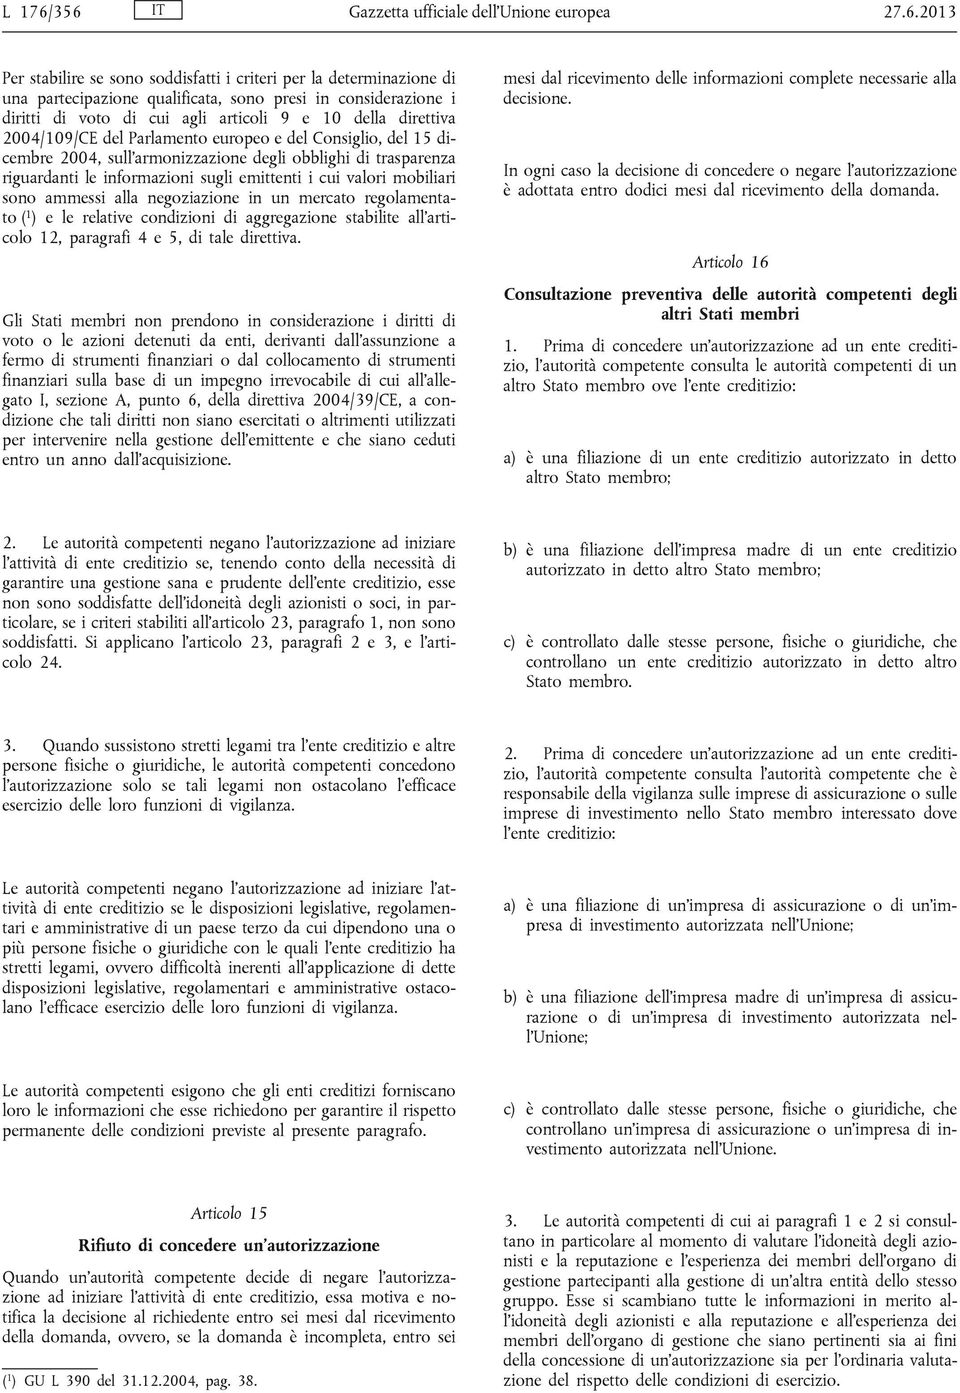 voto di cui agli articoli 9 e 10 della direttiva 2004/109/CE del Parlamento europeo e del Consiglio, del 15 dicembre 2004, sull'armonizzazione degli obblighi di trasparenza riguardanti le